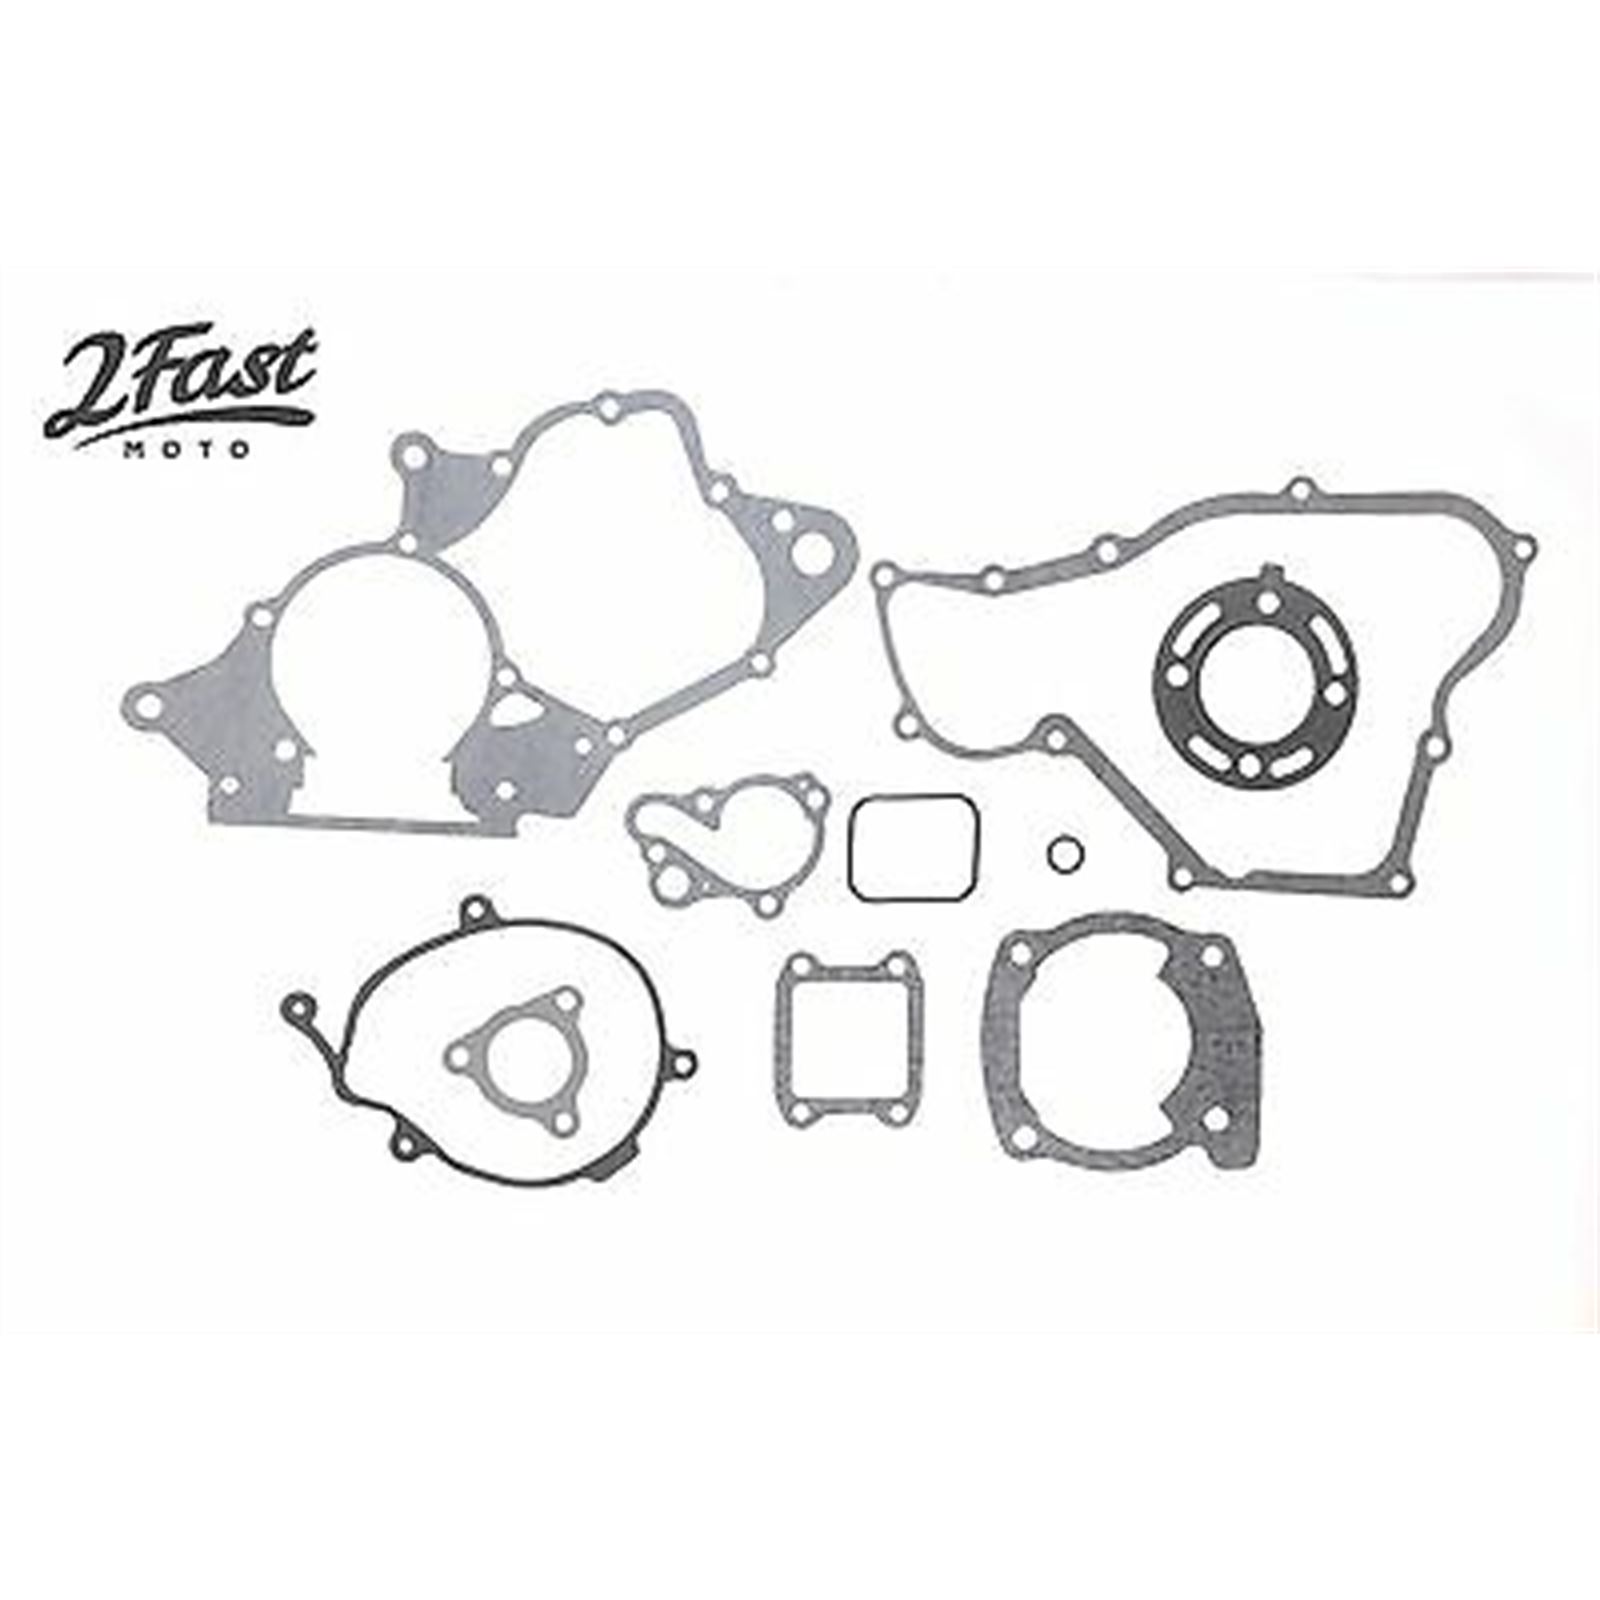 2FastMoto Complete Engine Rebuild Gasket Kit for Honda CR80R, CR80RB 92-02